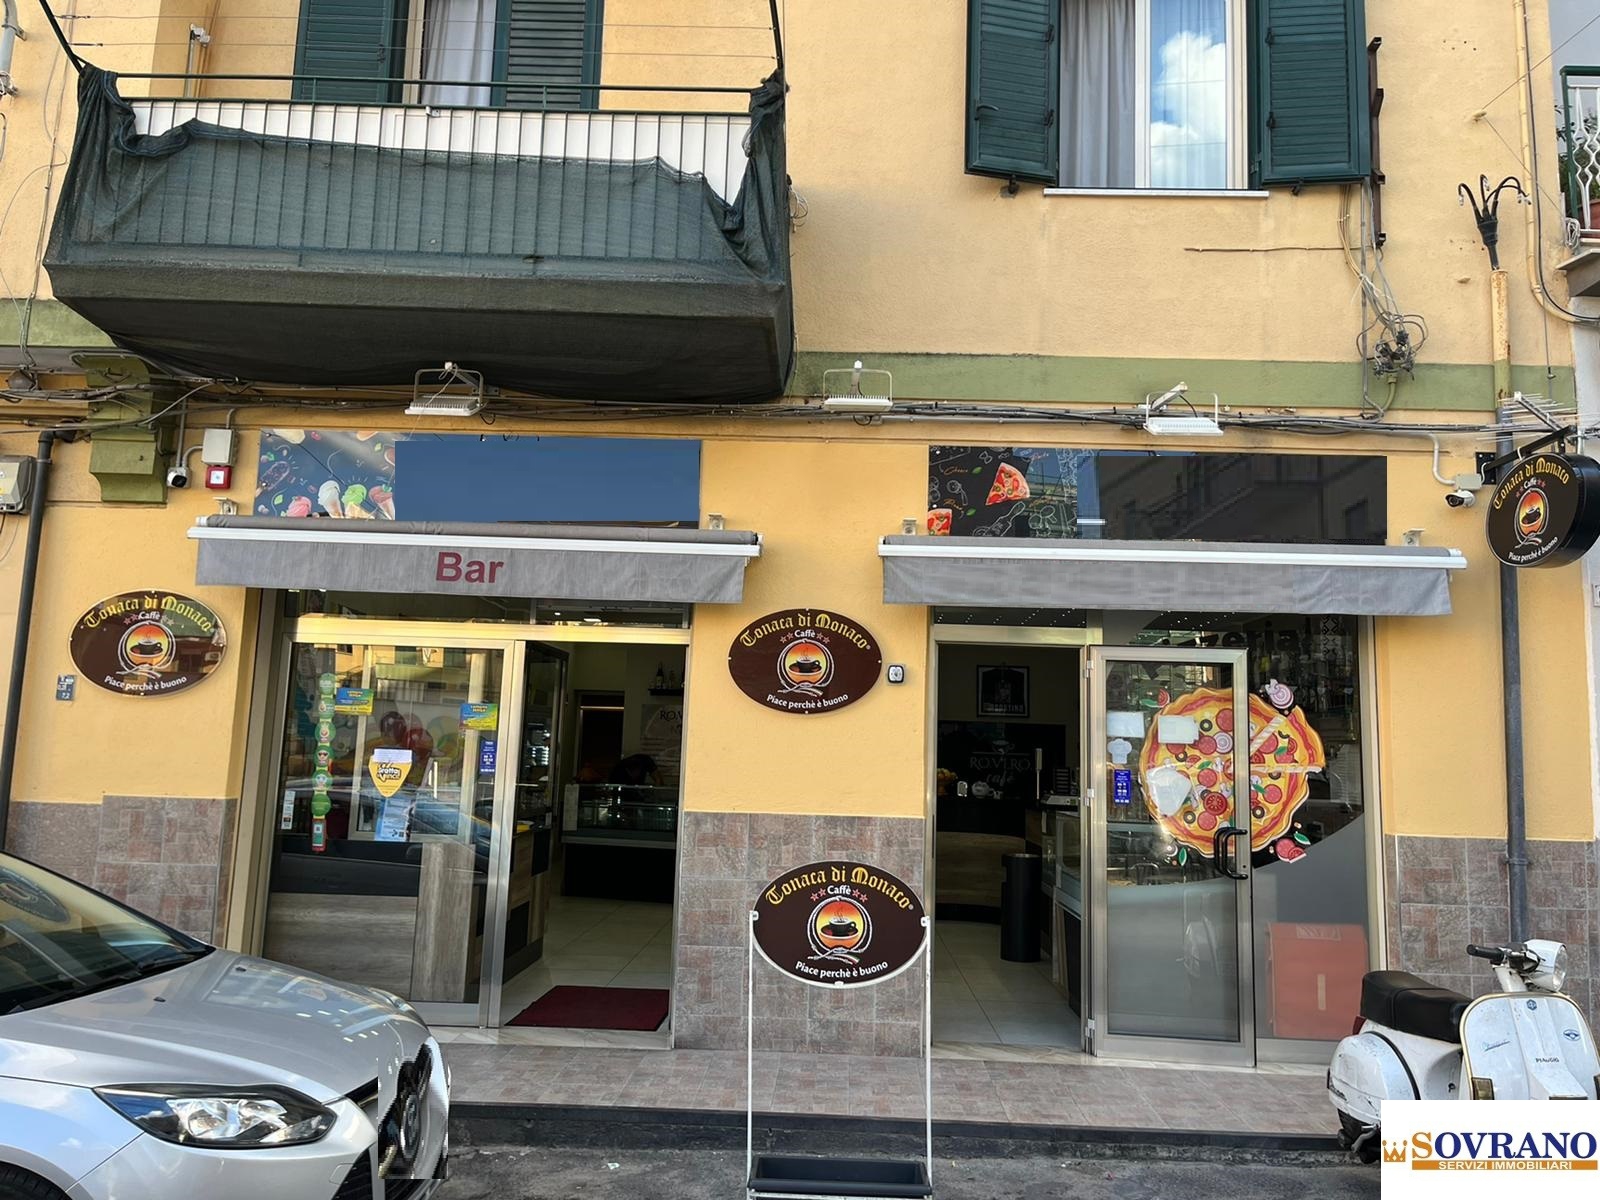 Locale commerciale in vendita a Palermo